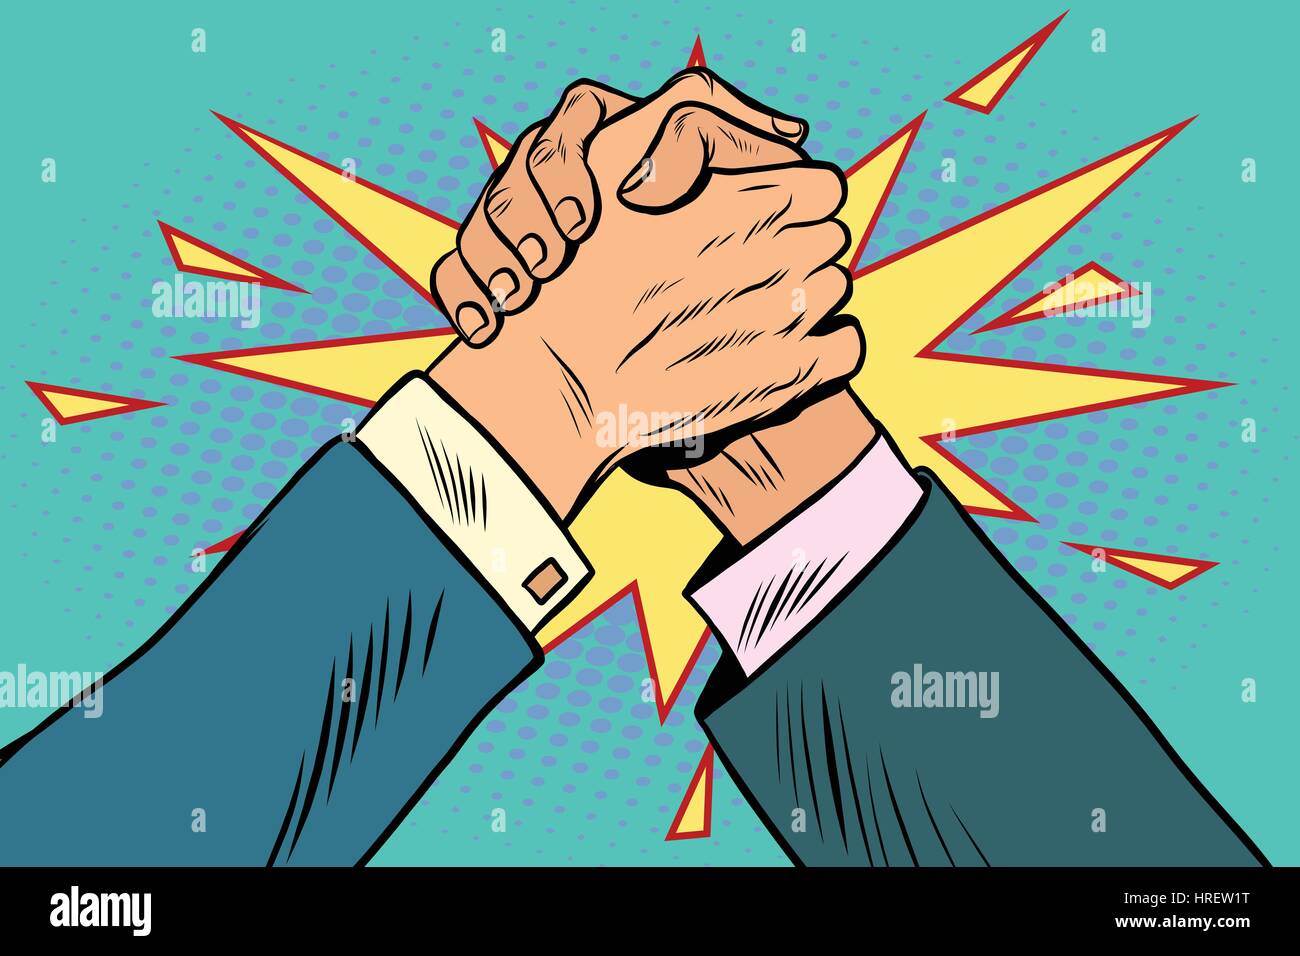 Geschäft Armdrücken Kampf Konfrontation, Pop-Art-Retro-Vektor-illustration Stock Vektor